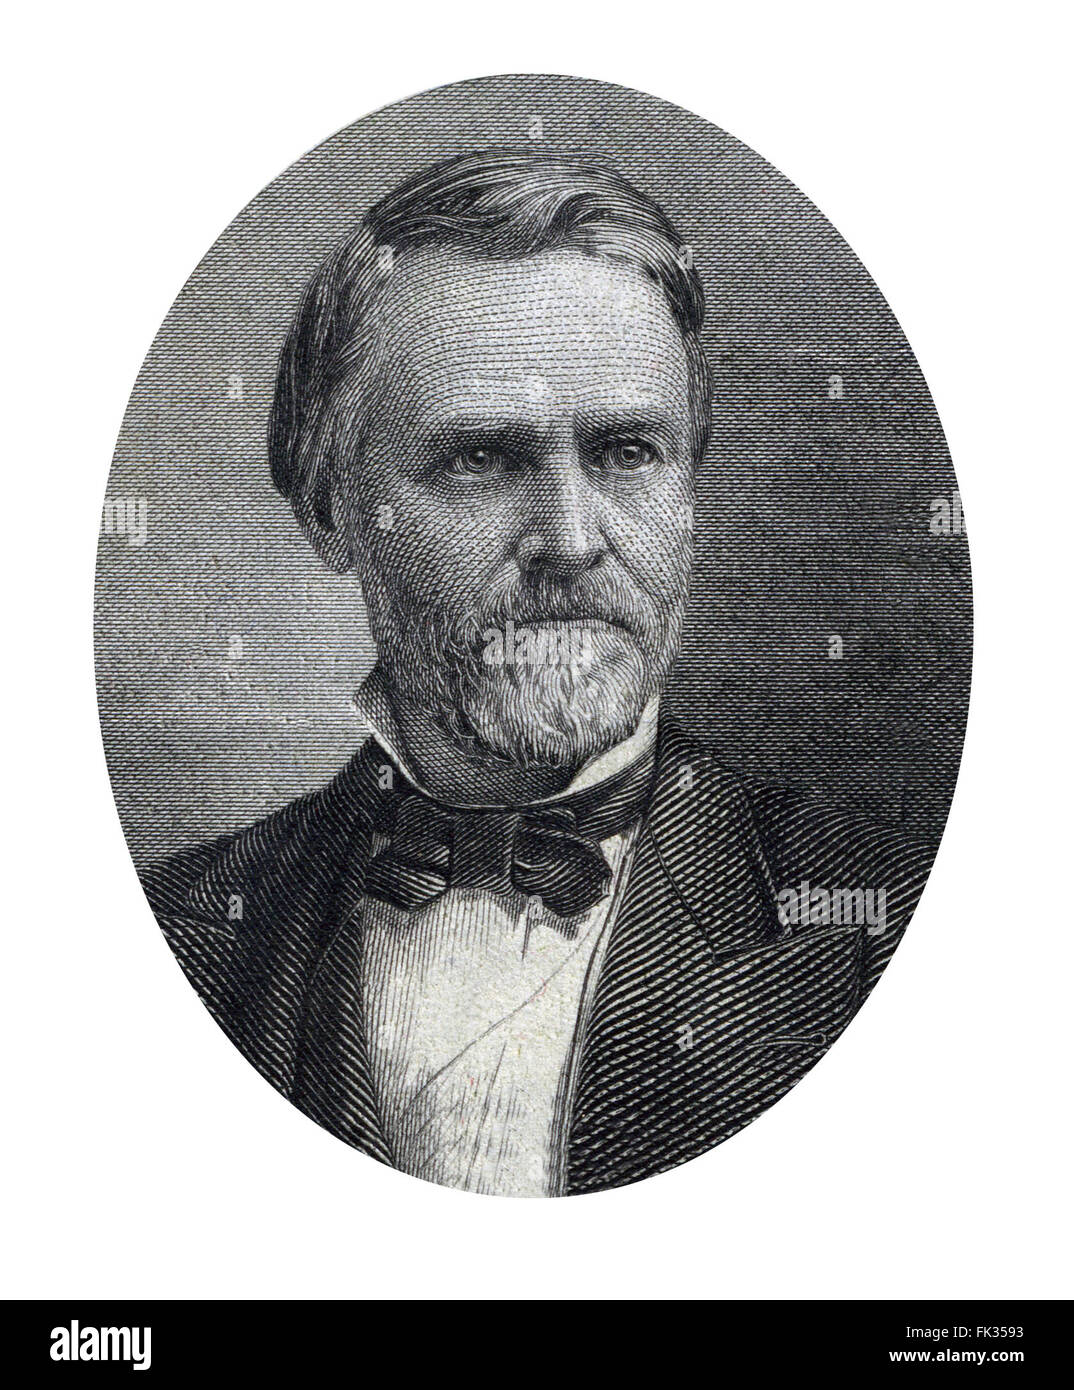 John Sherman (Mai 10, 1823 - Octobre 22, 1900) était un représentant républicain et sénateur de l'Ohio pendant la guerre civile et à la fin du xixe siècle Banque D'Images